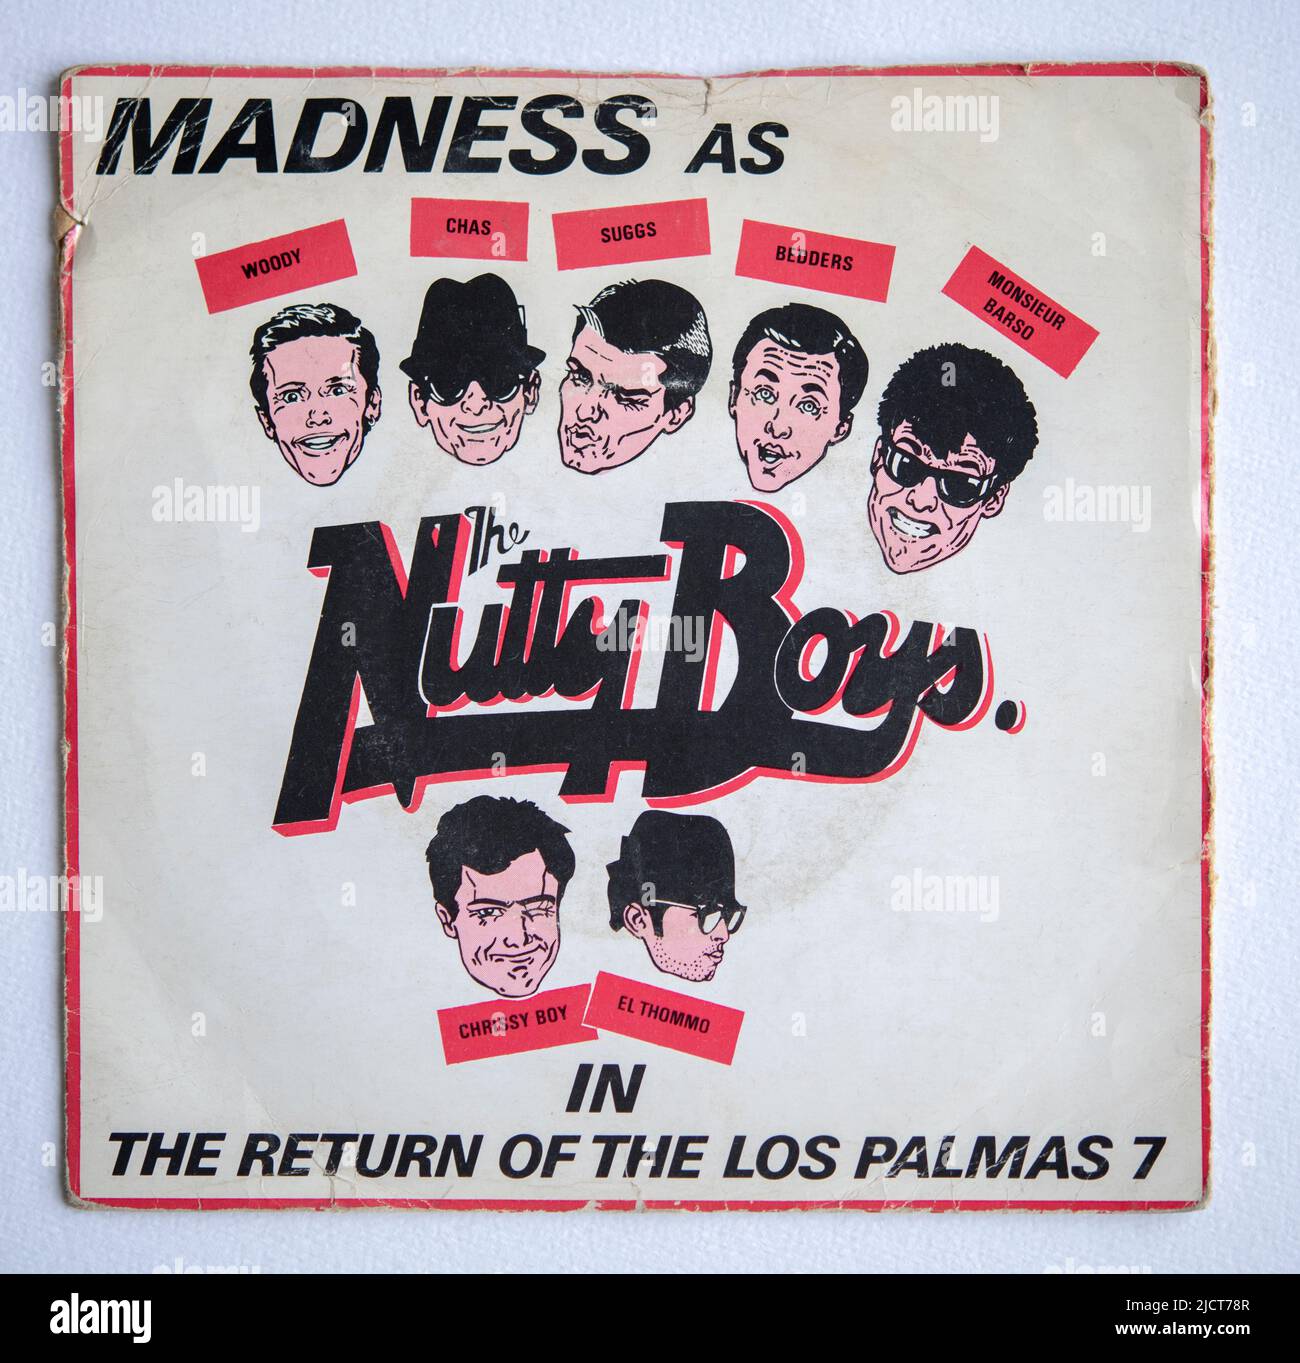 Couverture de l'image de la version simple de sept pouces du retour de Las Palmas 7 par Madness, qui a été publié en 1981 Banque D'Images